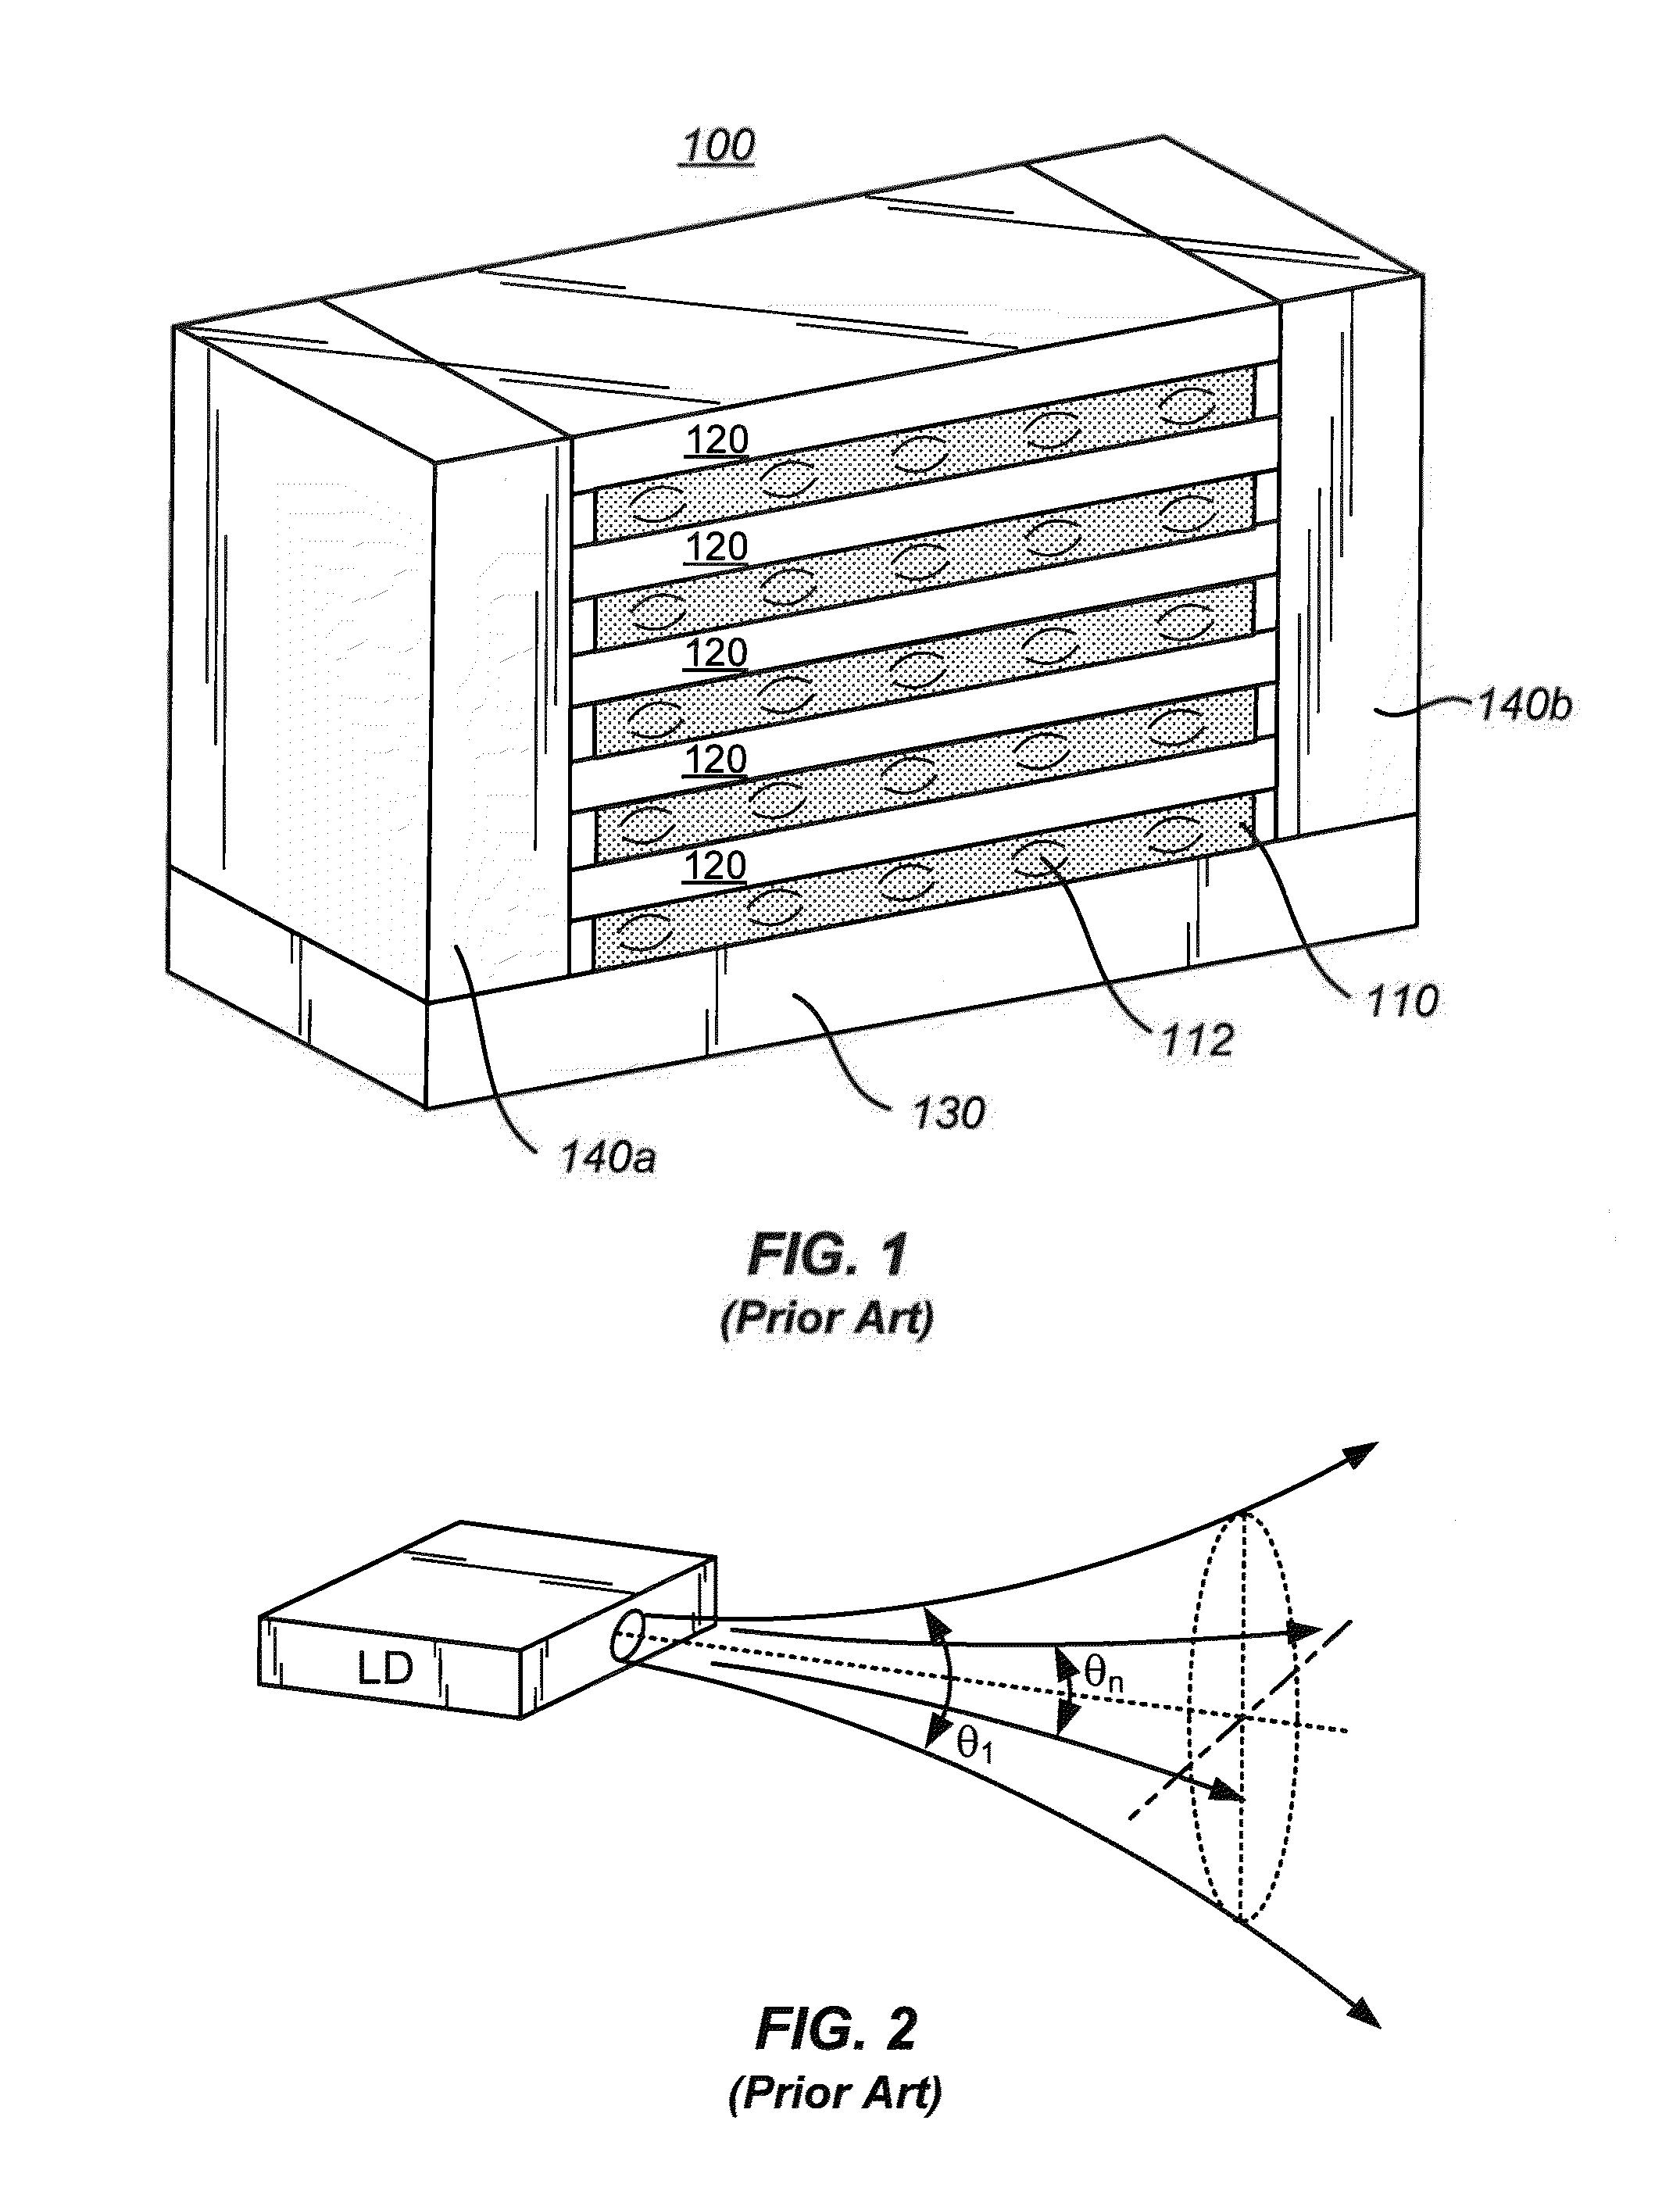 Method and system for homogenizing diode laser pump arrays